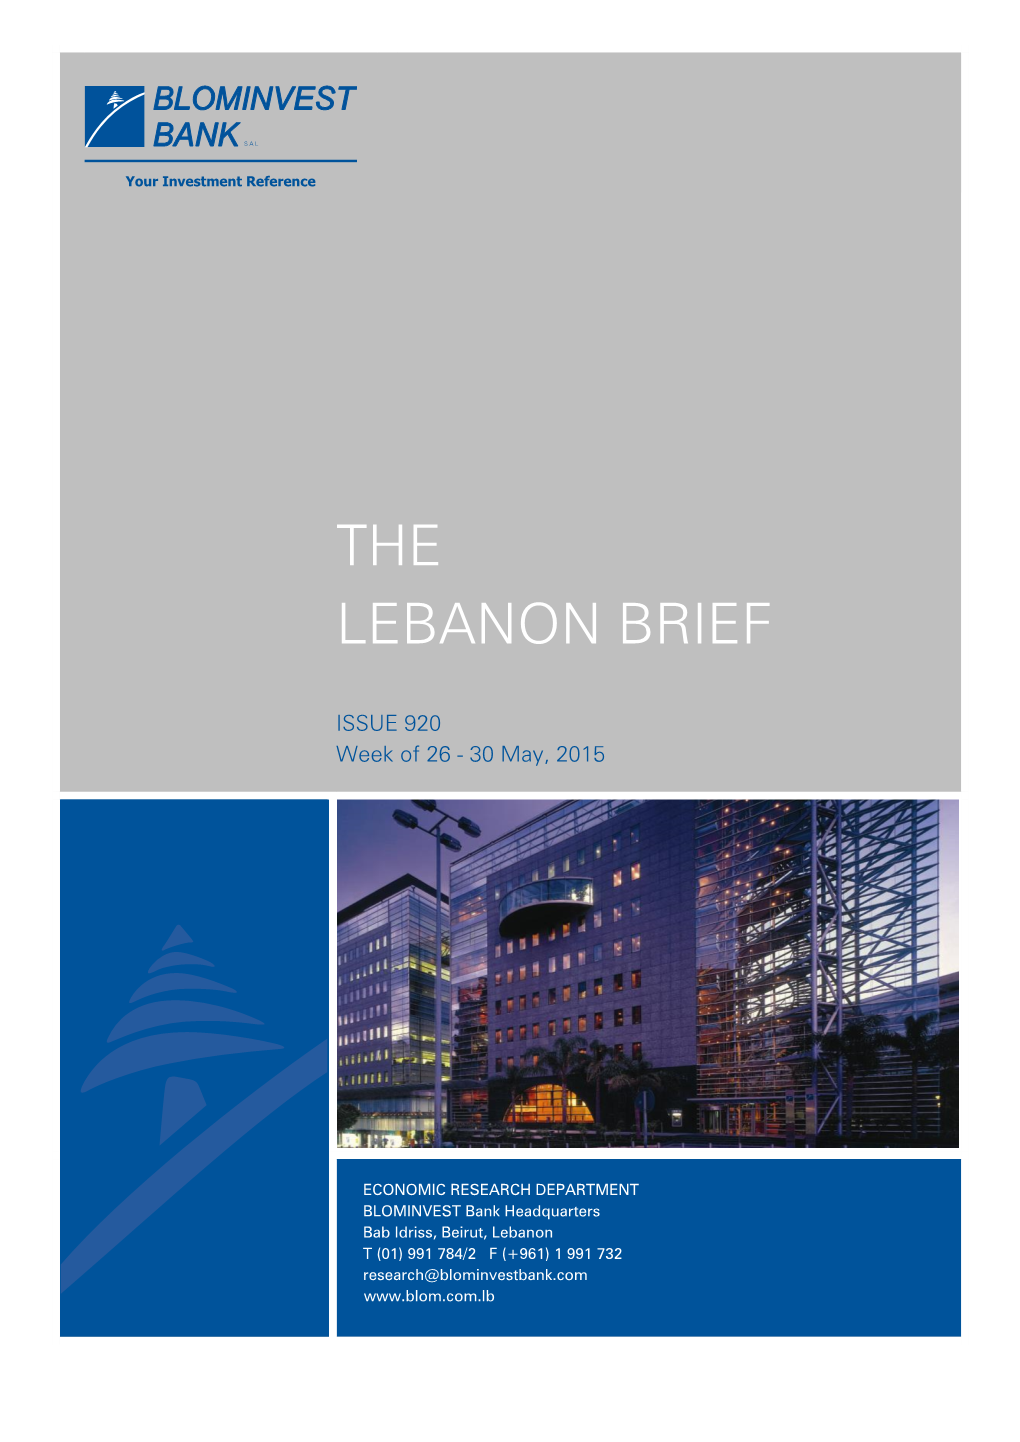 The Lebanon Brief